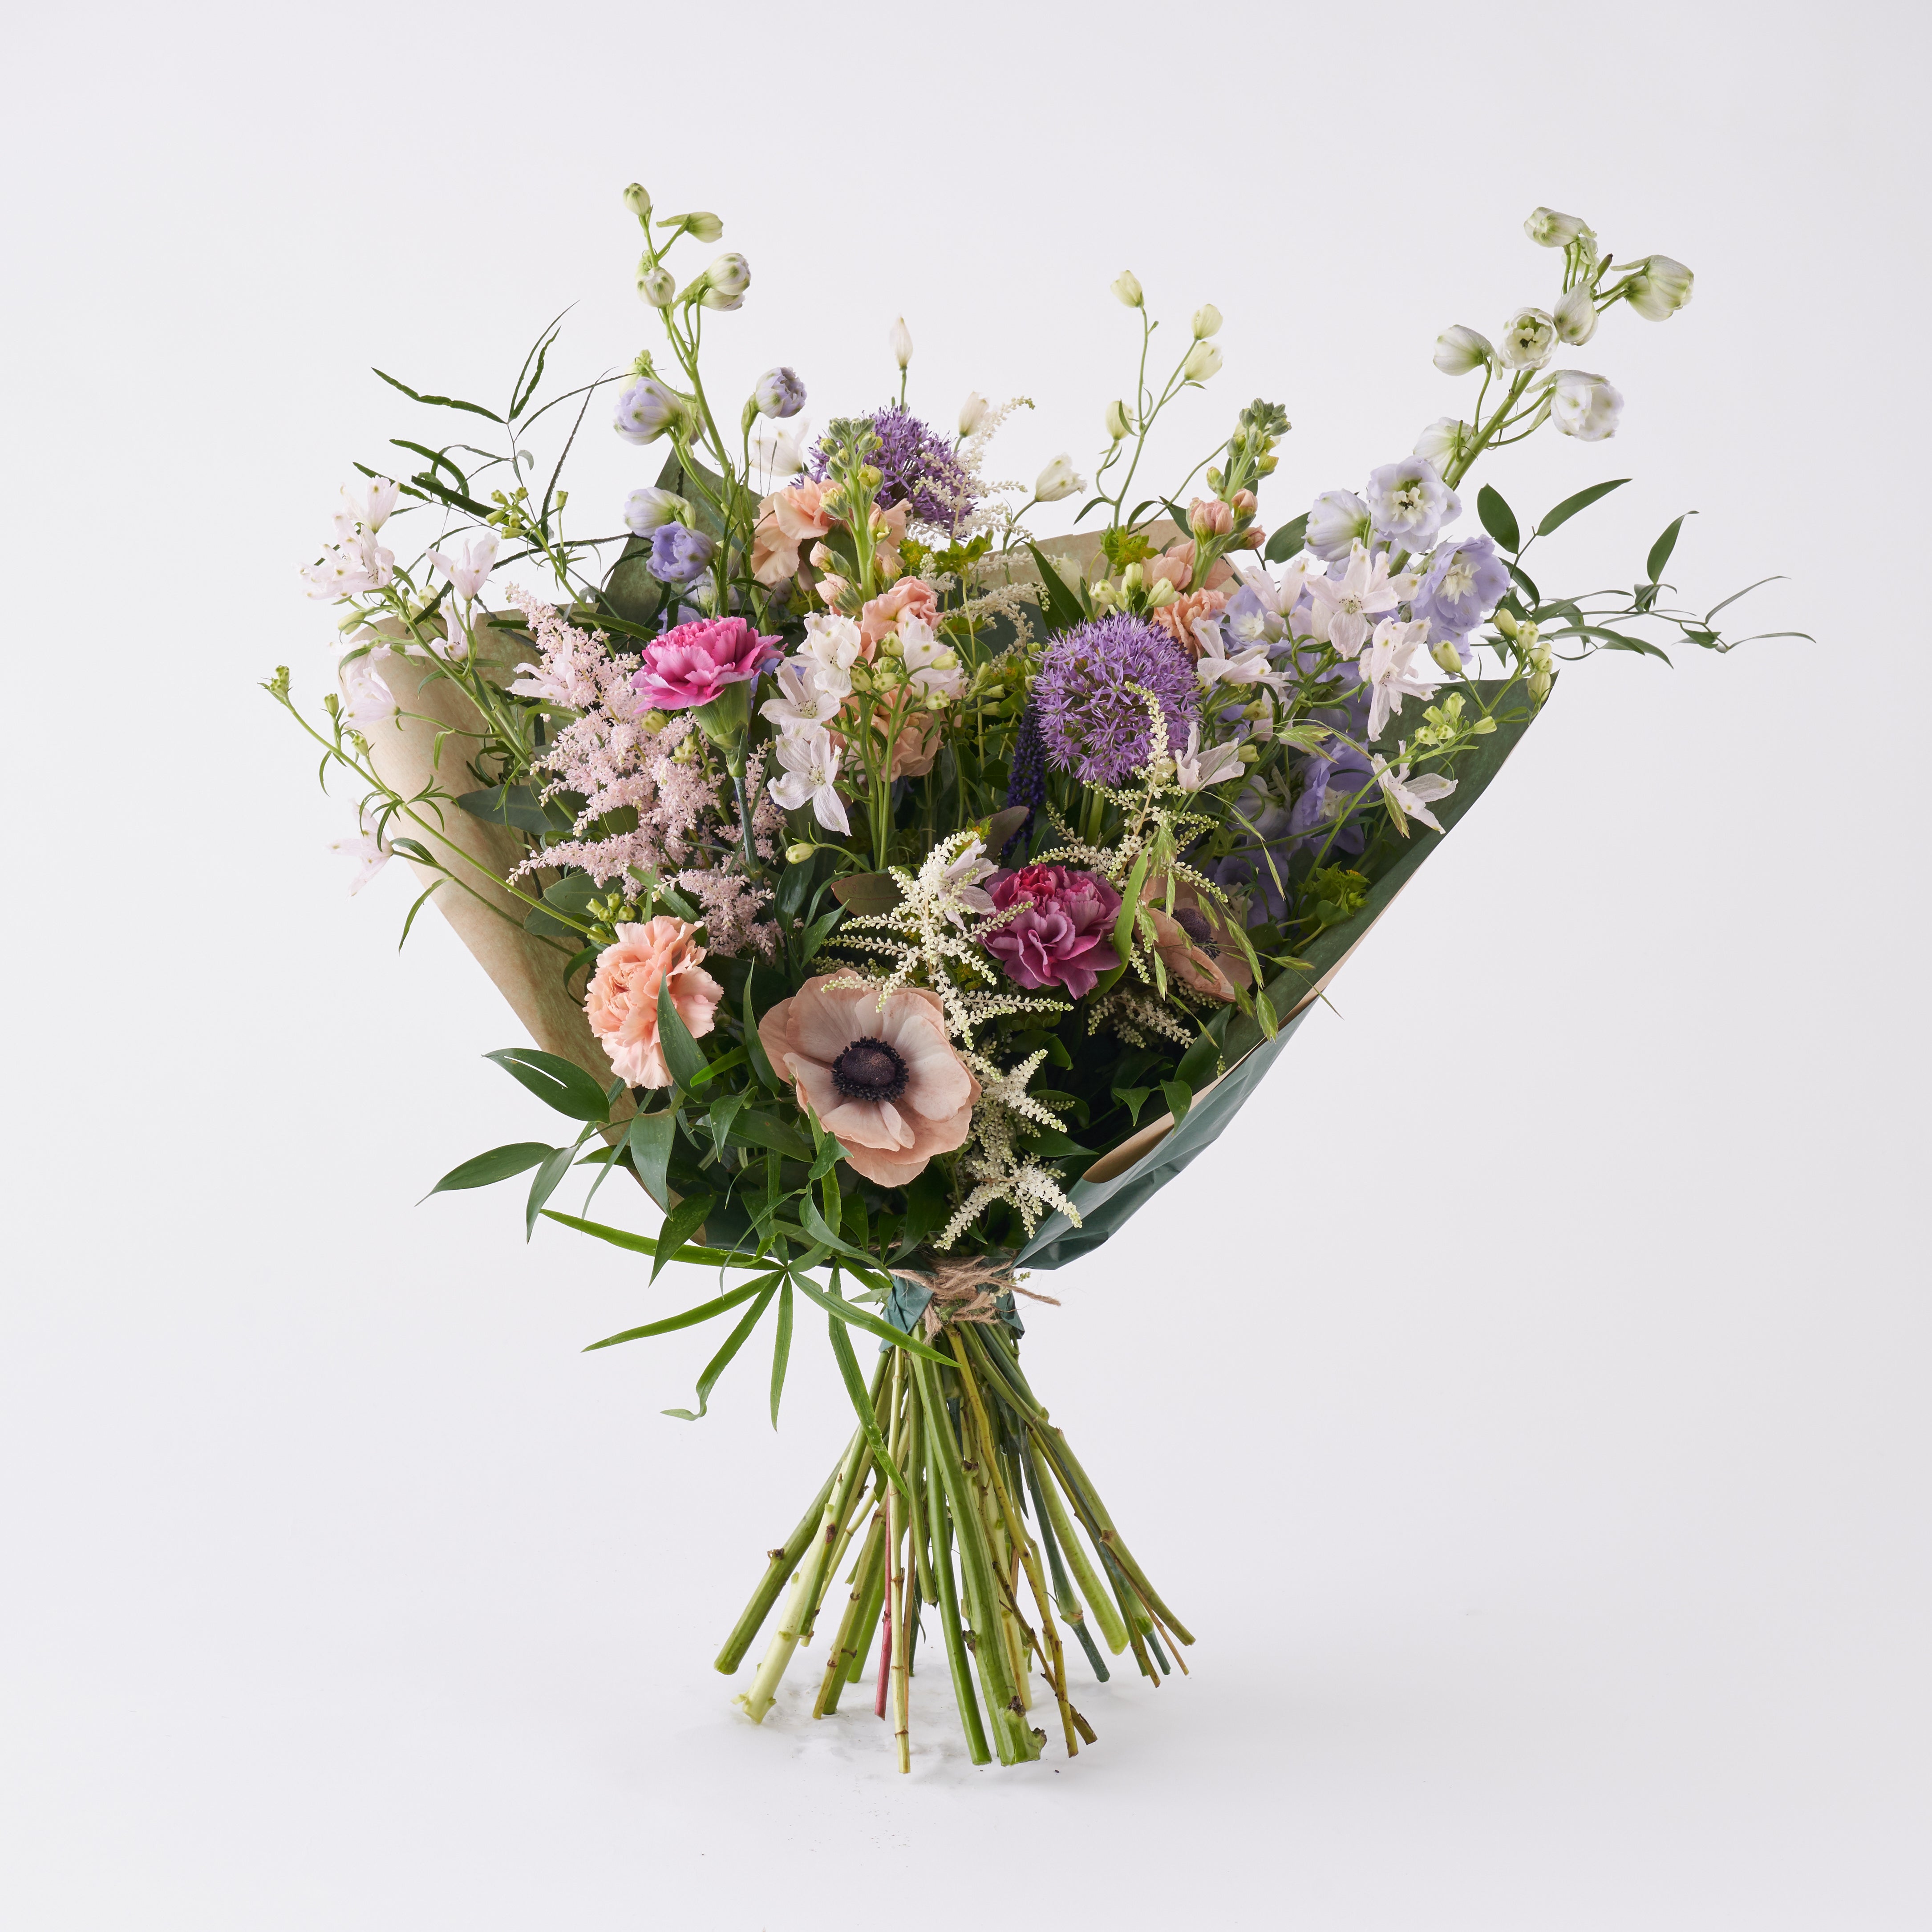 pastel wild flower style bouquet by London florist Botanique Workshop